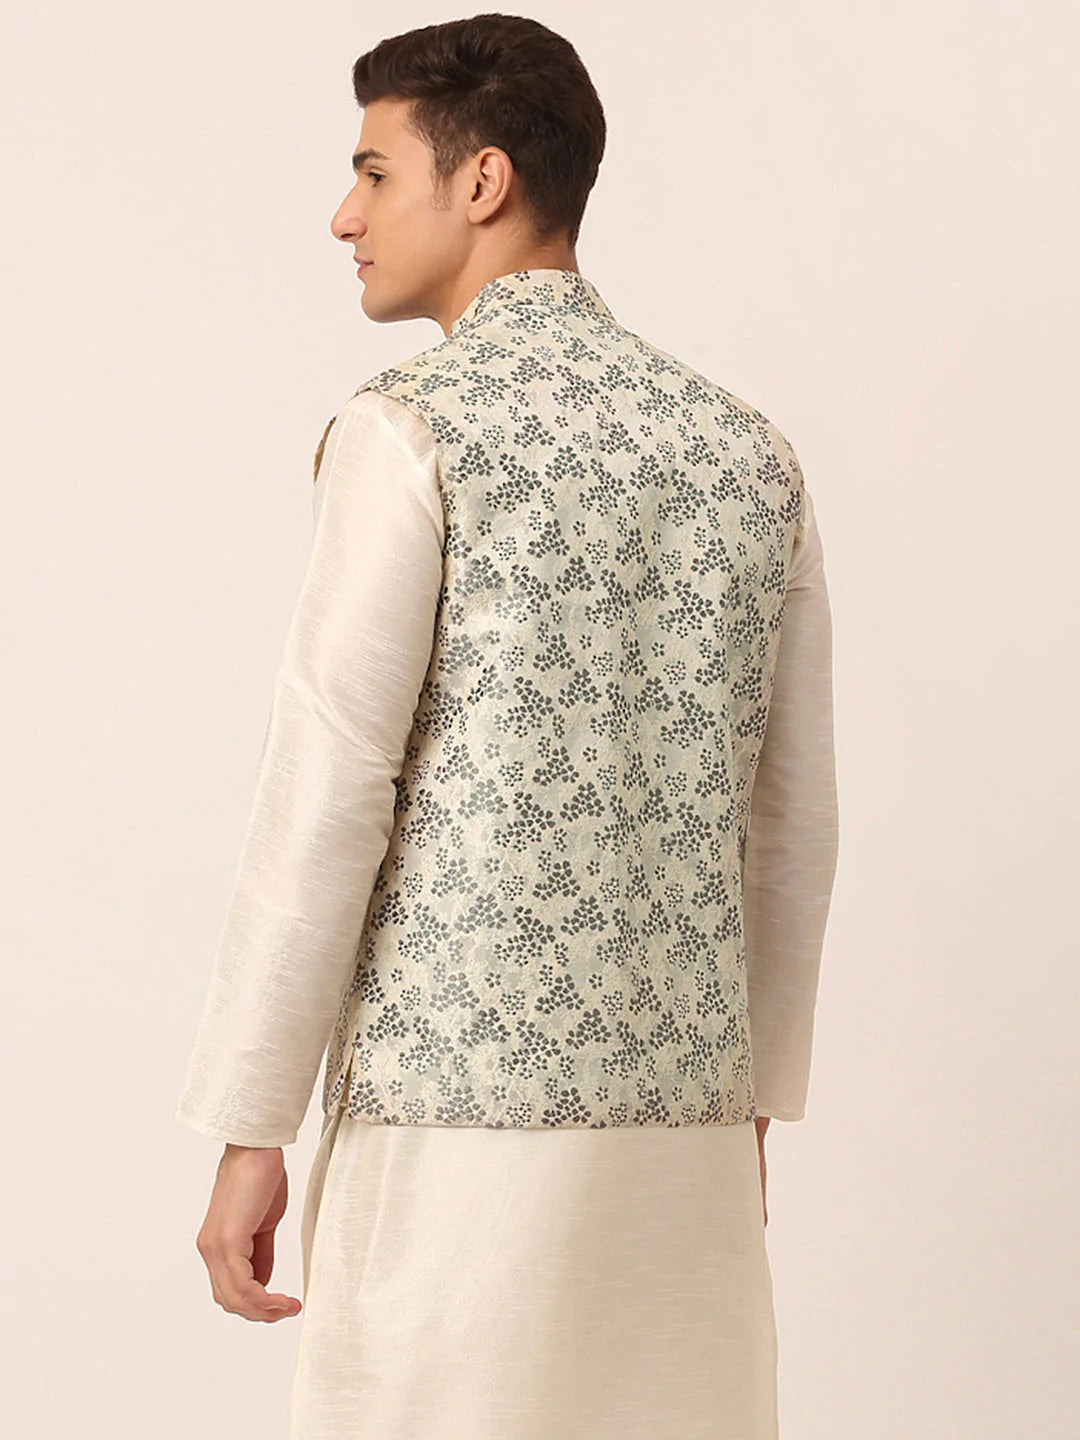 Men's Grey Floral Design Nehru Jacket.( JOWC 4042 Grey )